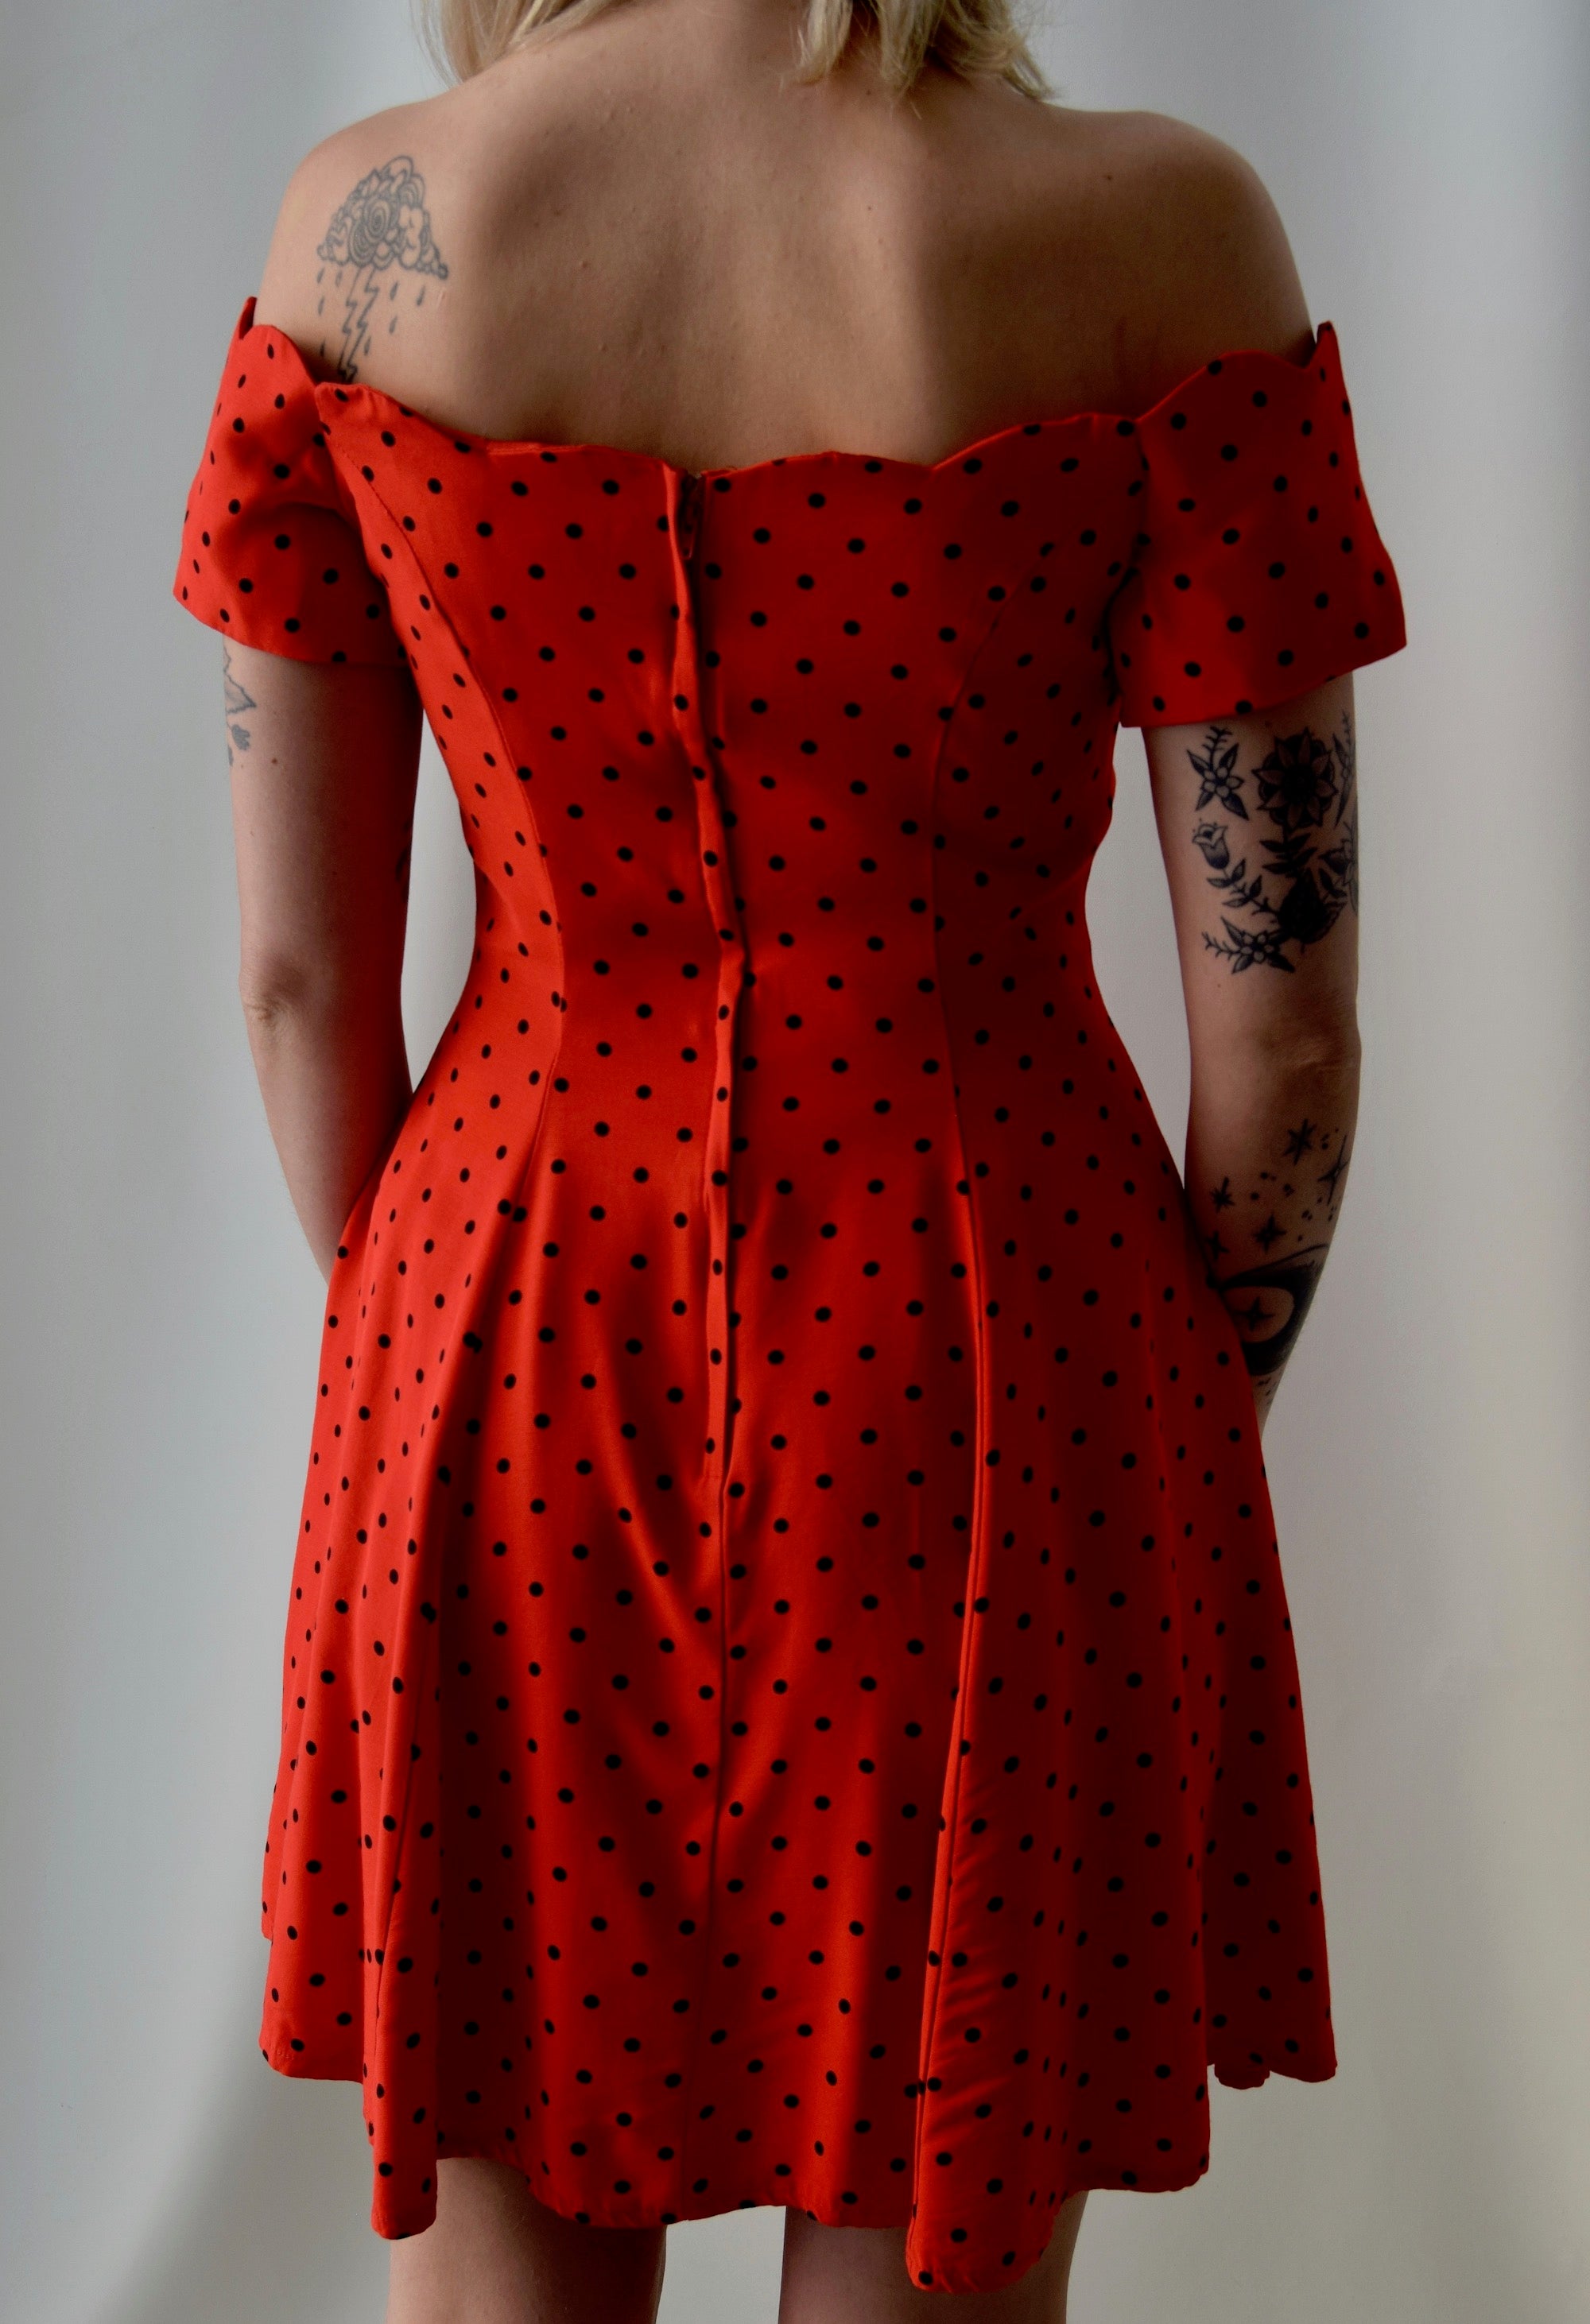 Vintage 80's Off The Shoulder Red Polka Dot Dress